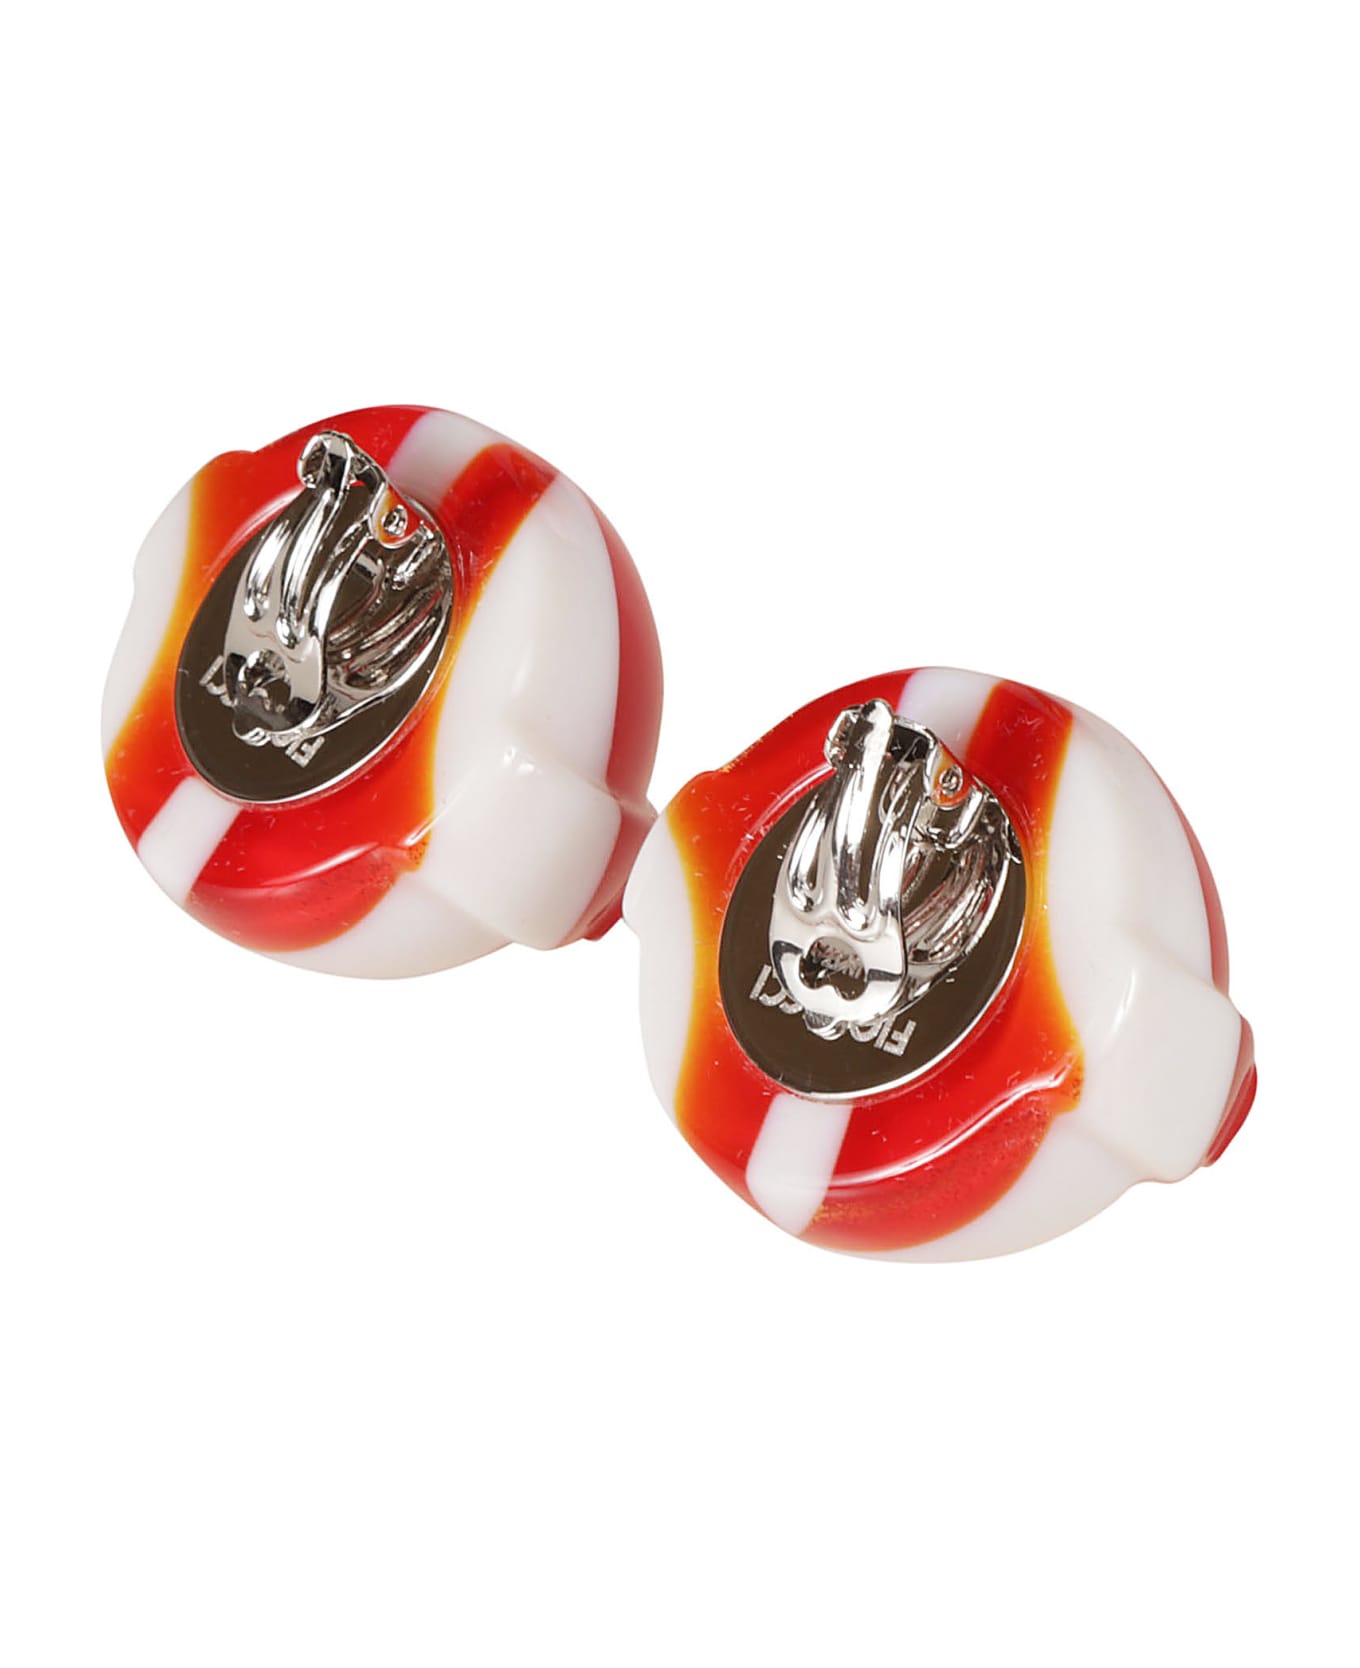 Fiorucci Lollipop Earrings - Red/White